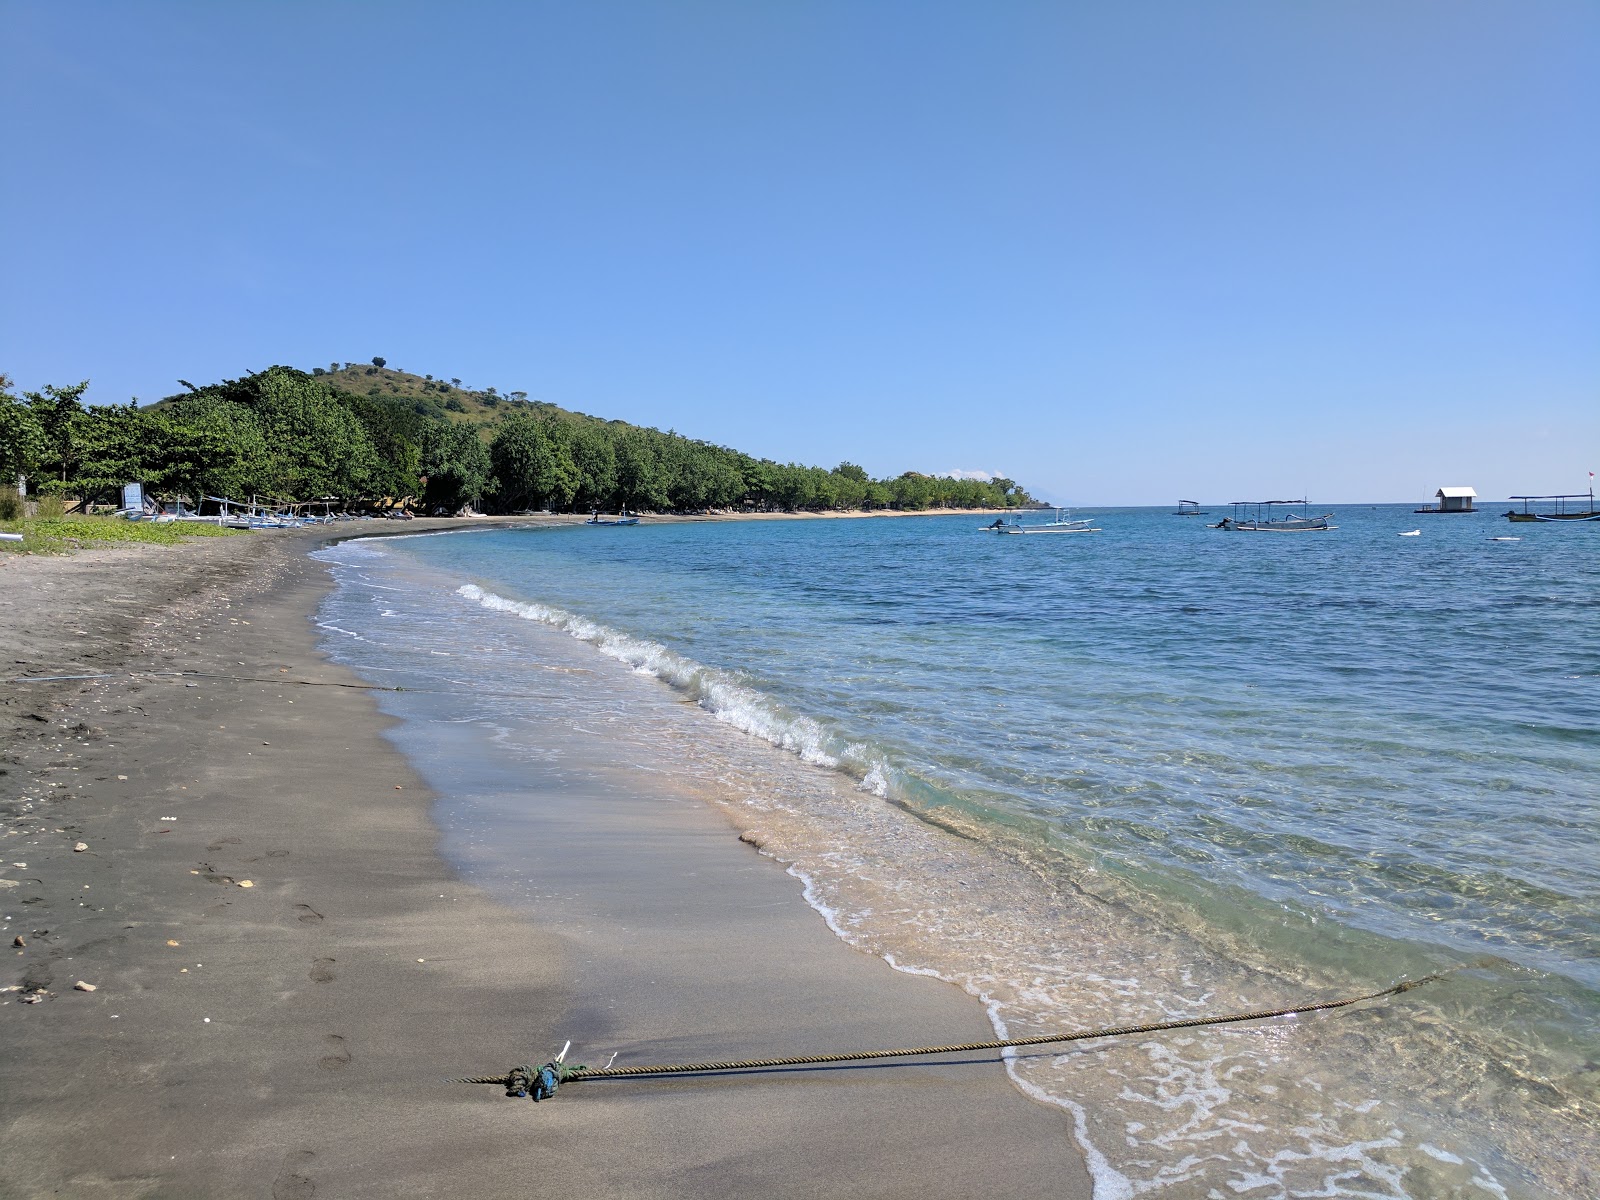 Fotografie cu Pemuteran Beach cu o suprafață de apă pură albastră